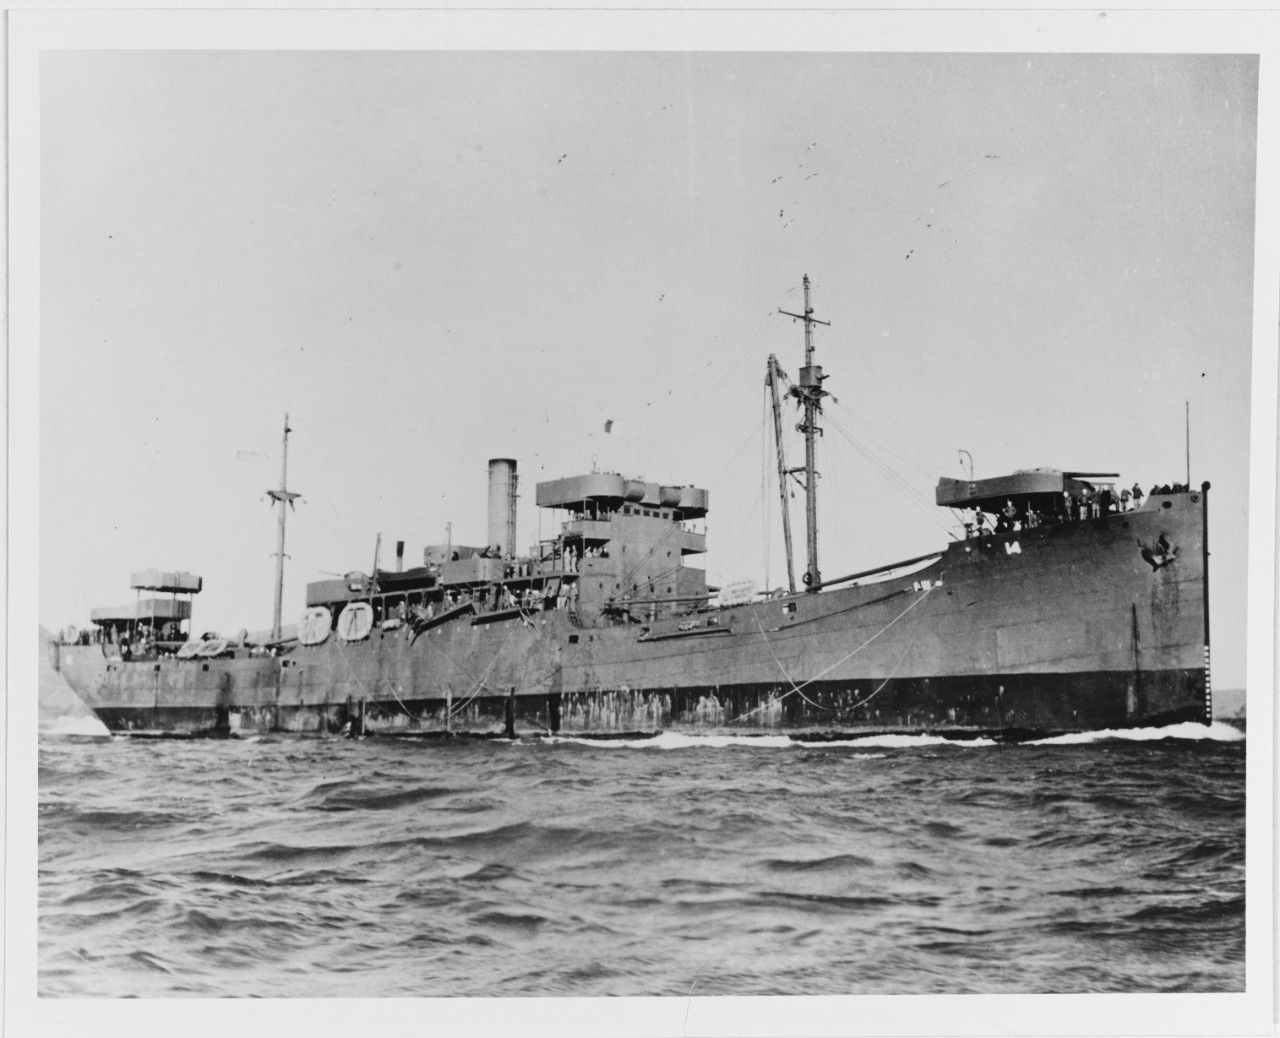 USS REGULUS (AK-14)